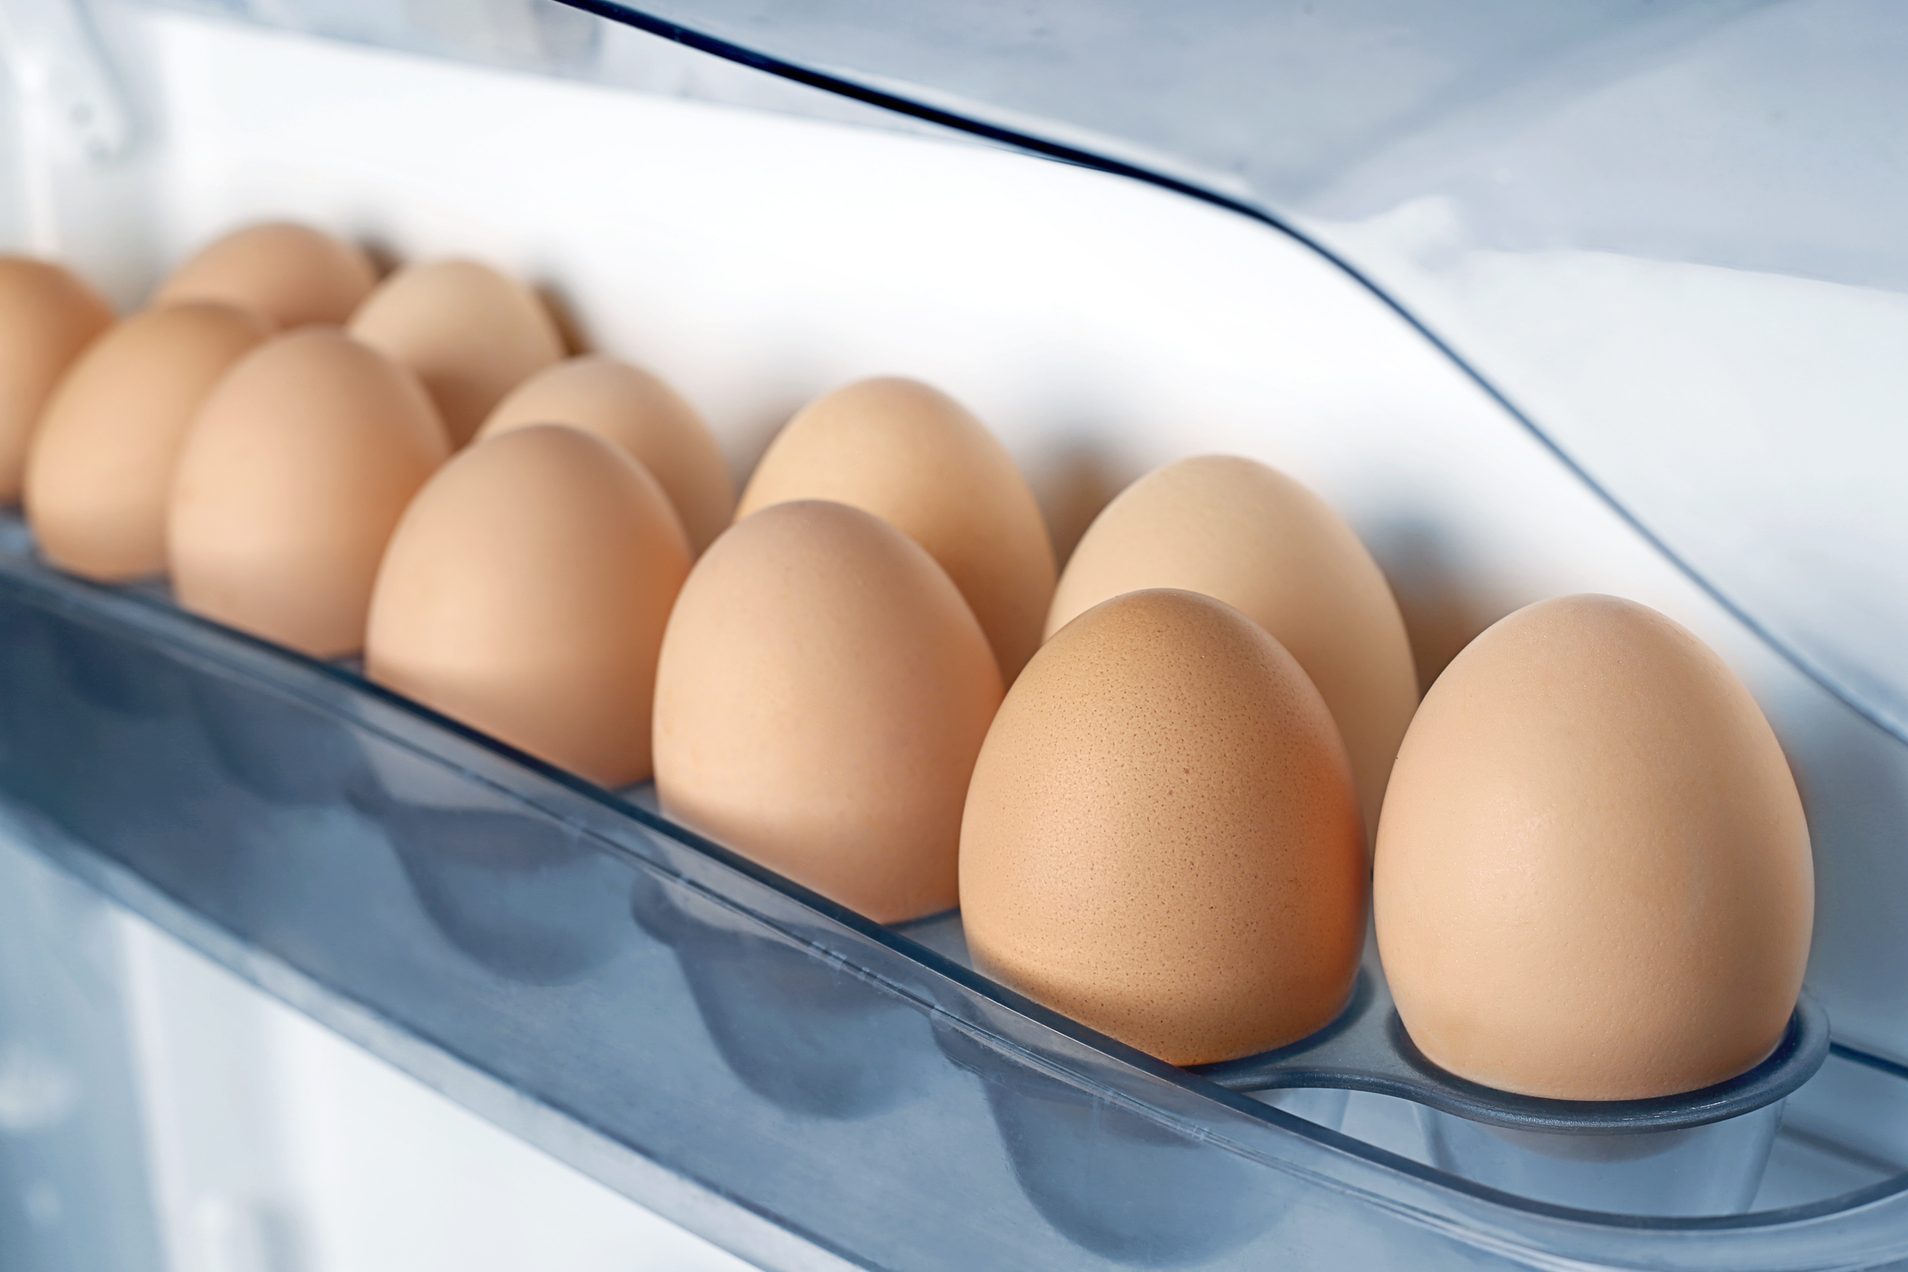 Eggs on fridge shelf.